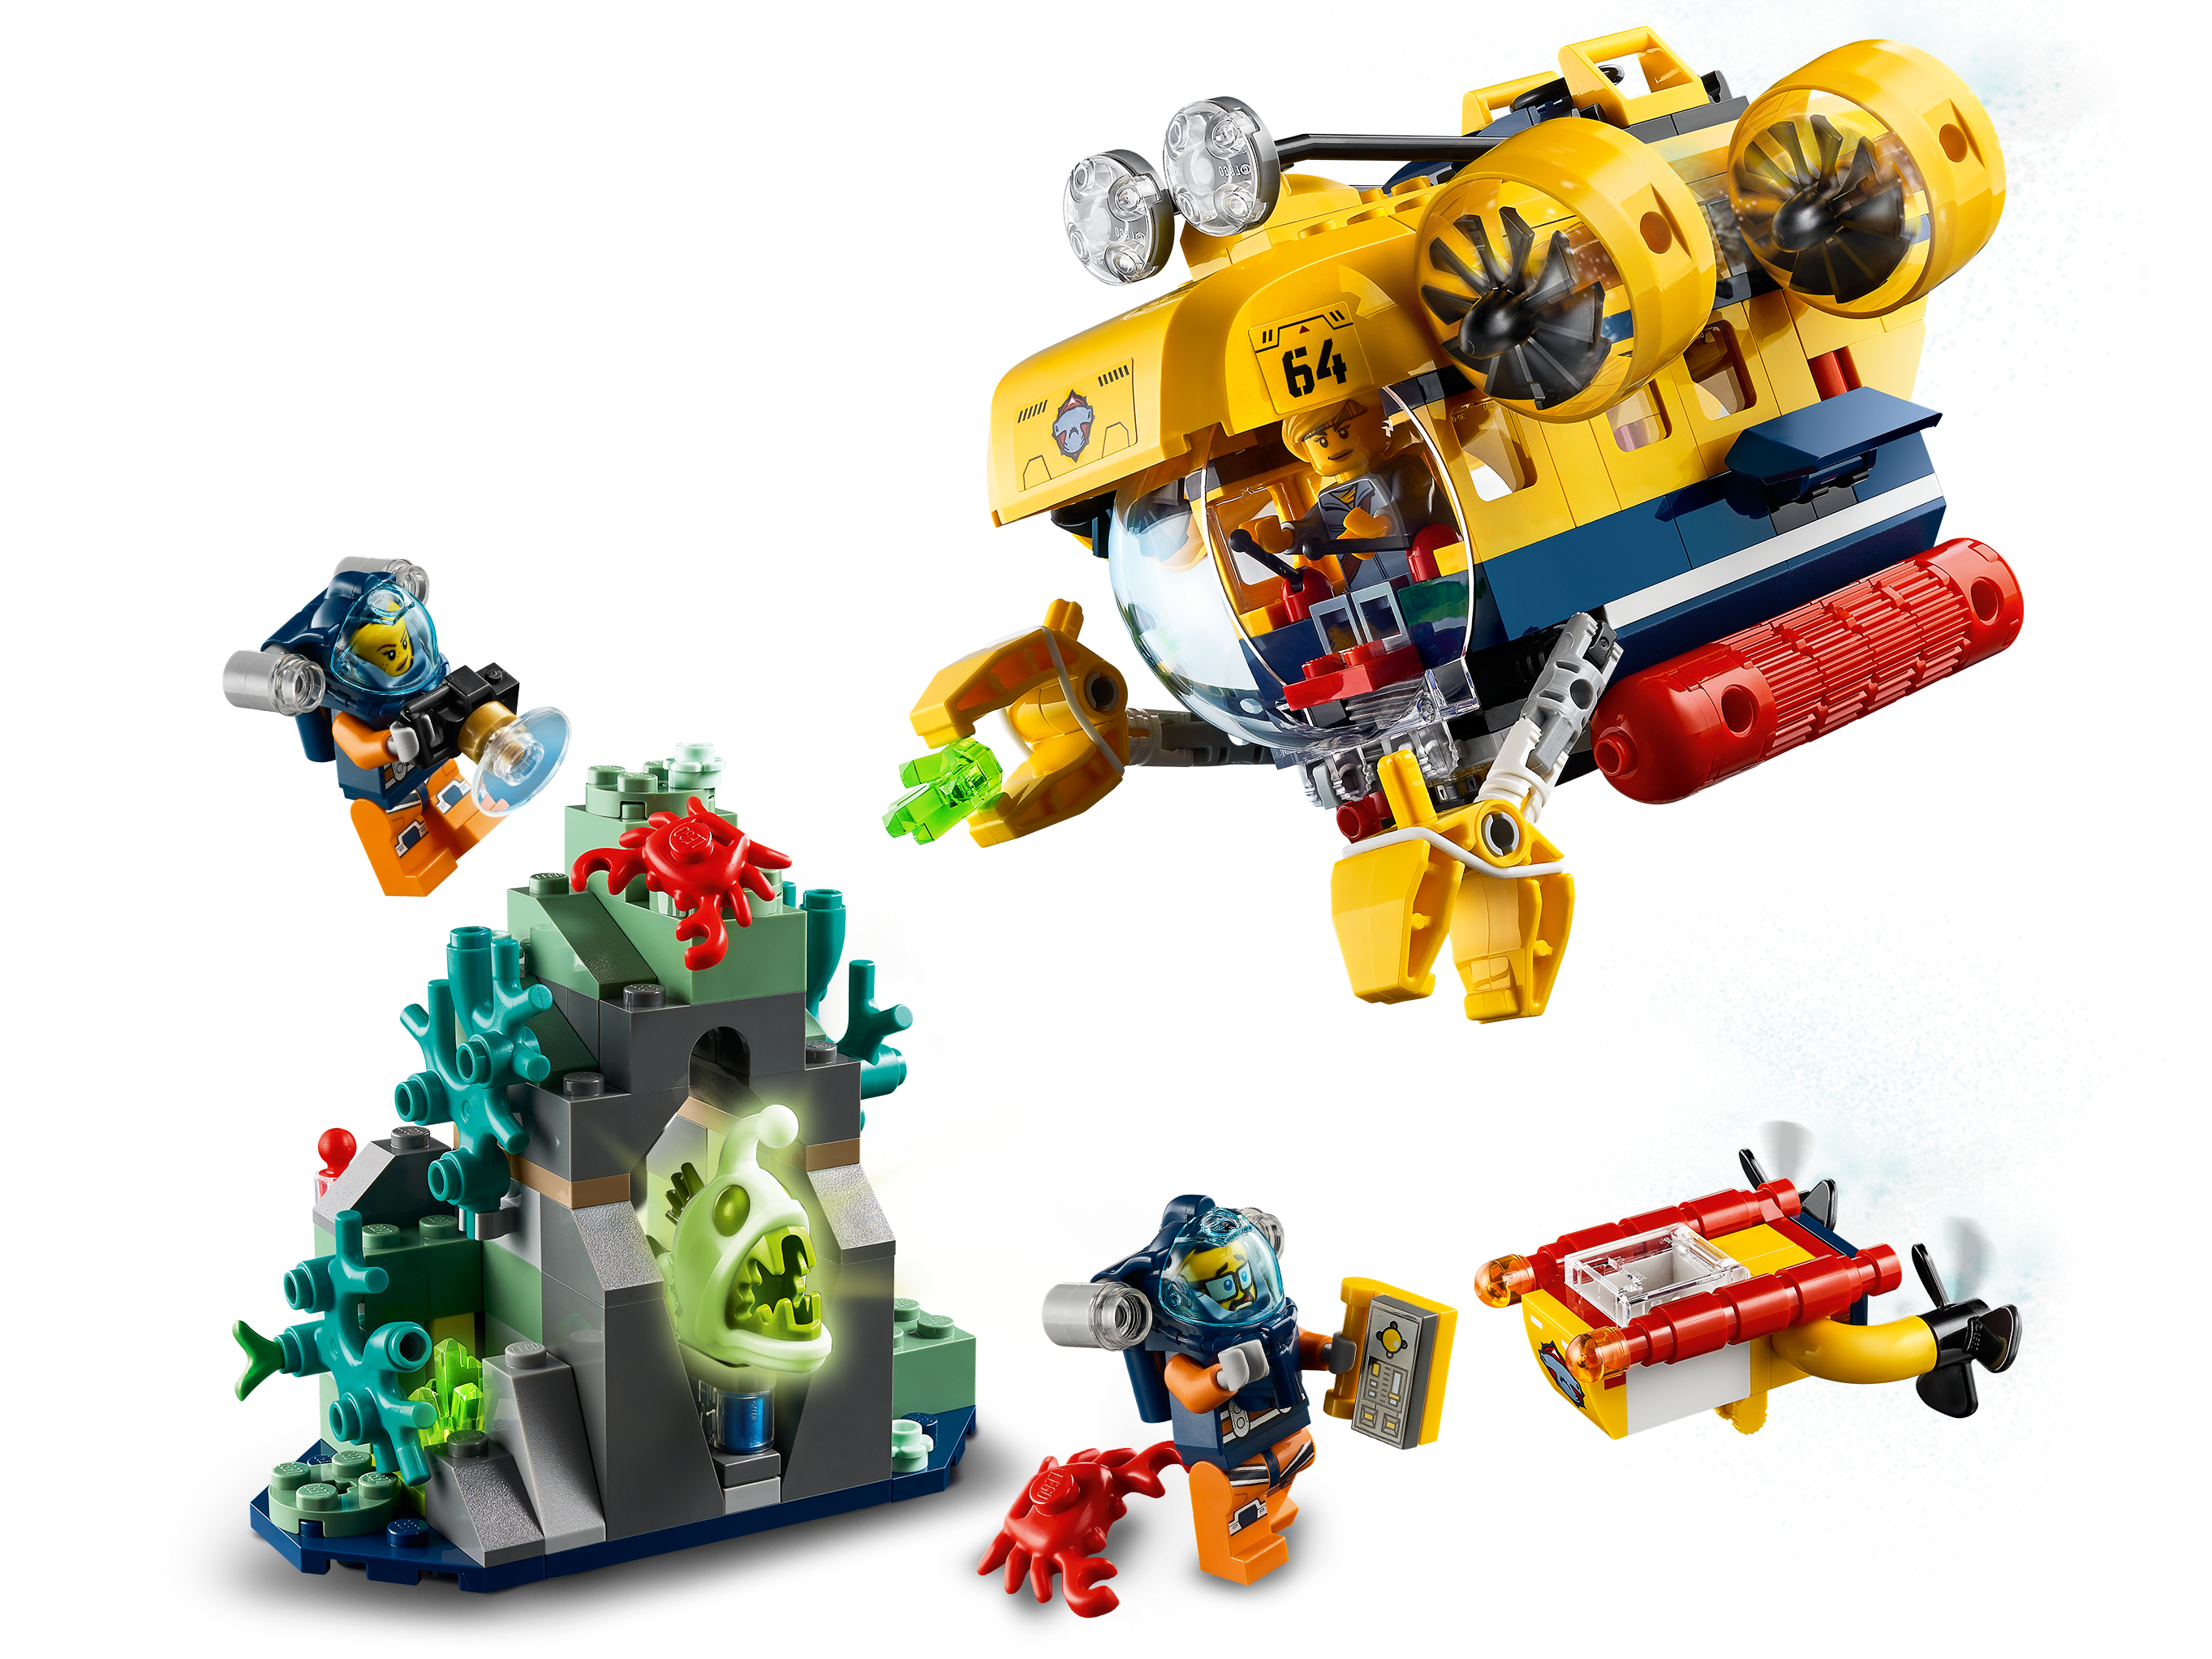 LEGO Submarine Image